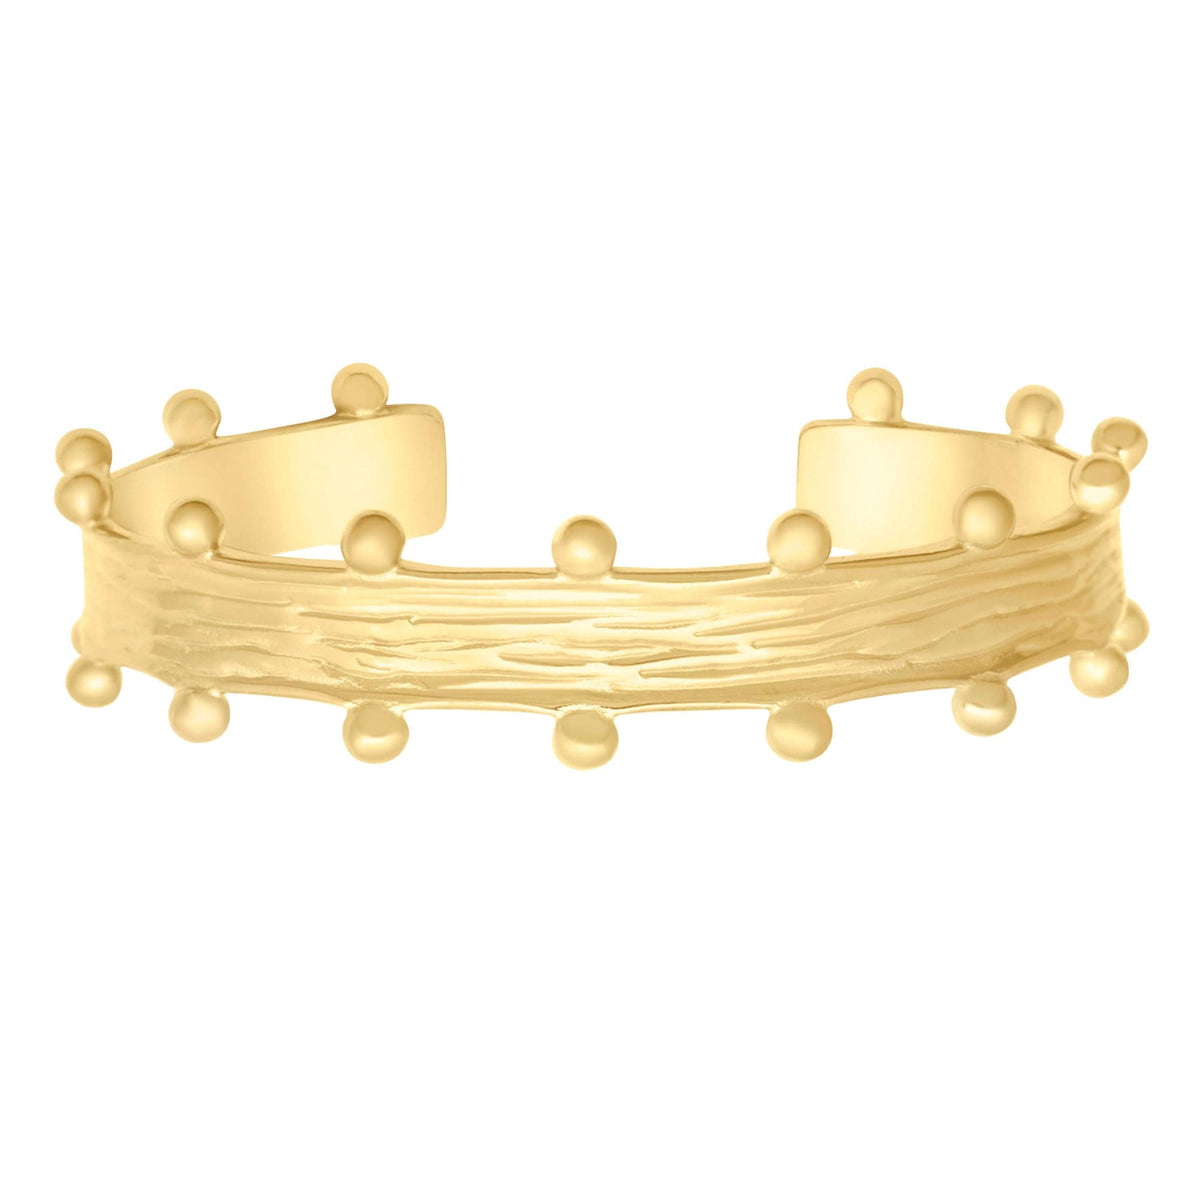 BohoMoon Stainless Steel Jordyn Cuff Bracelet Gold